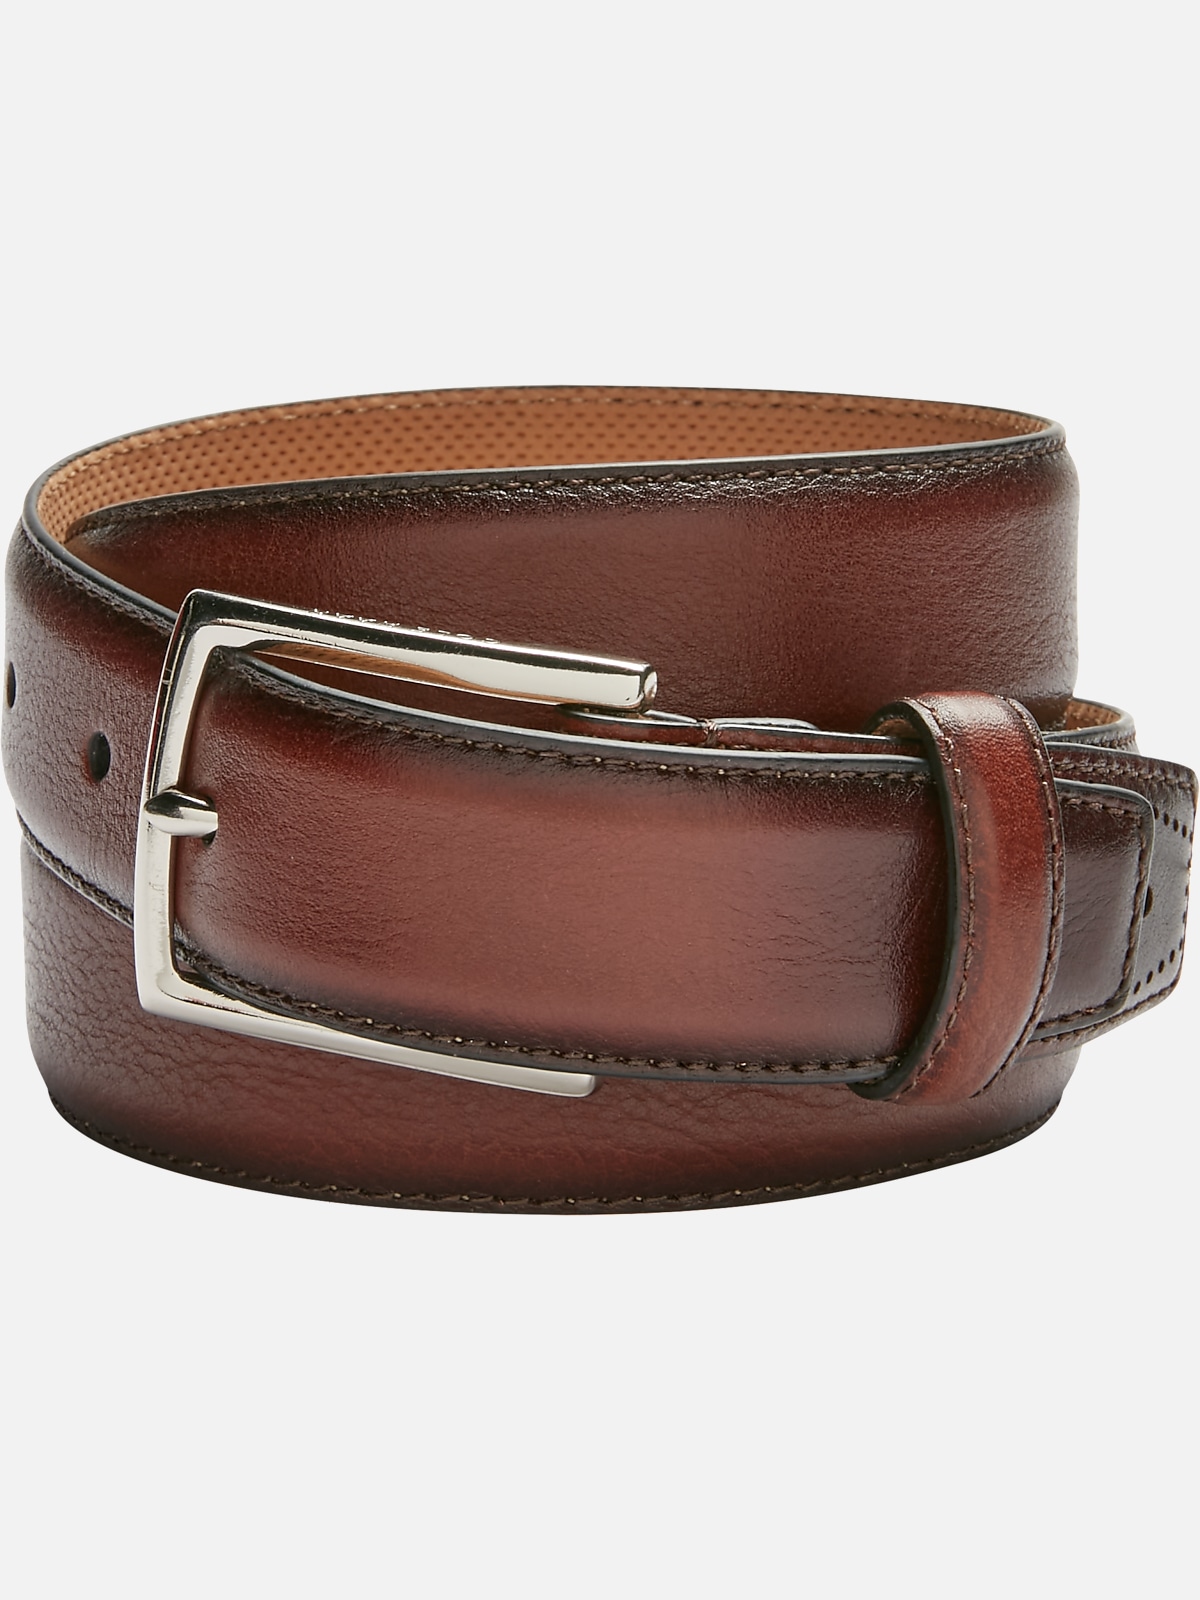 Leather Belts for Men 